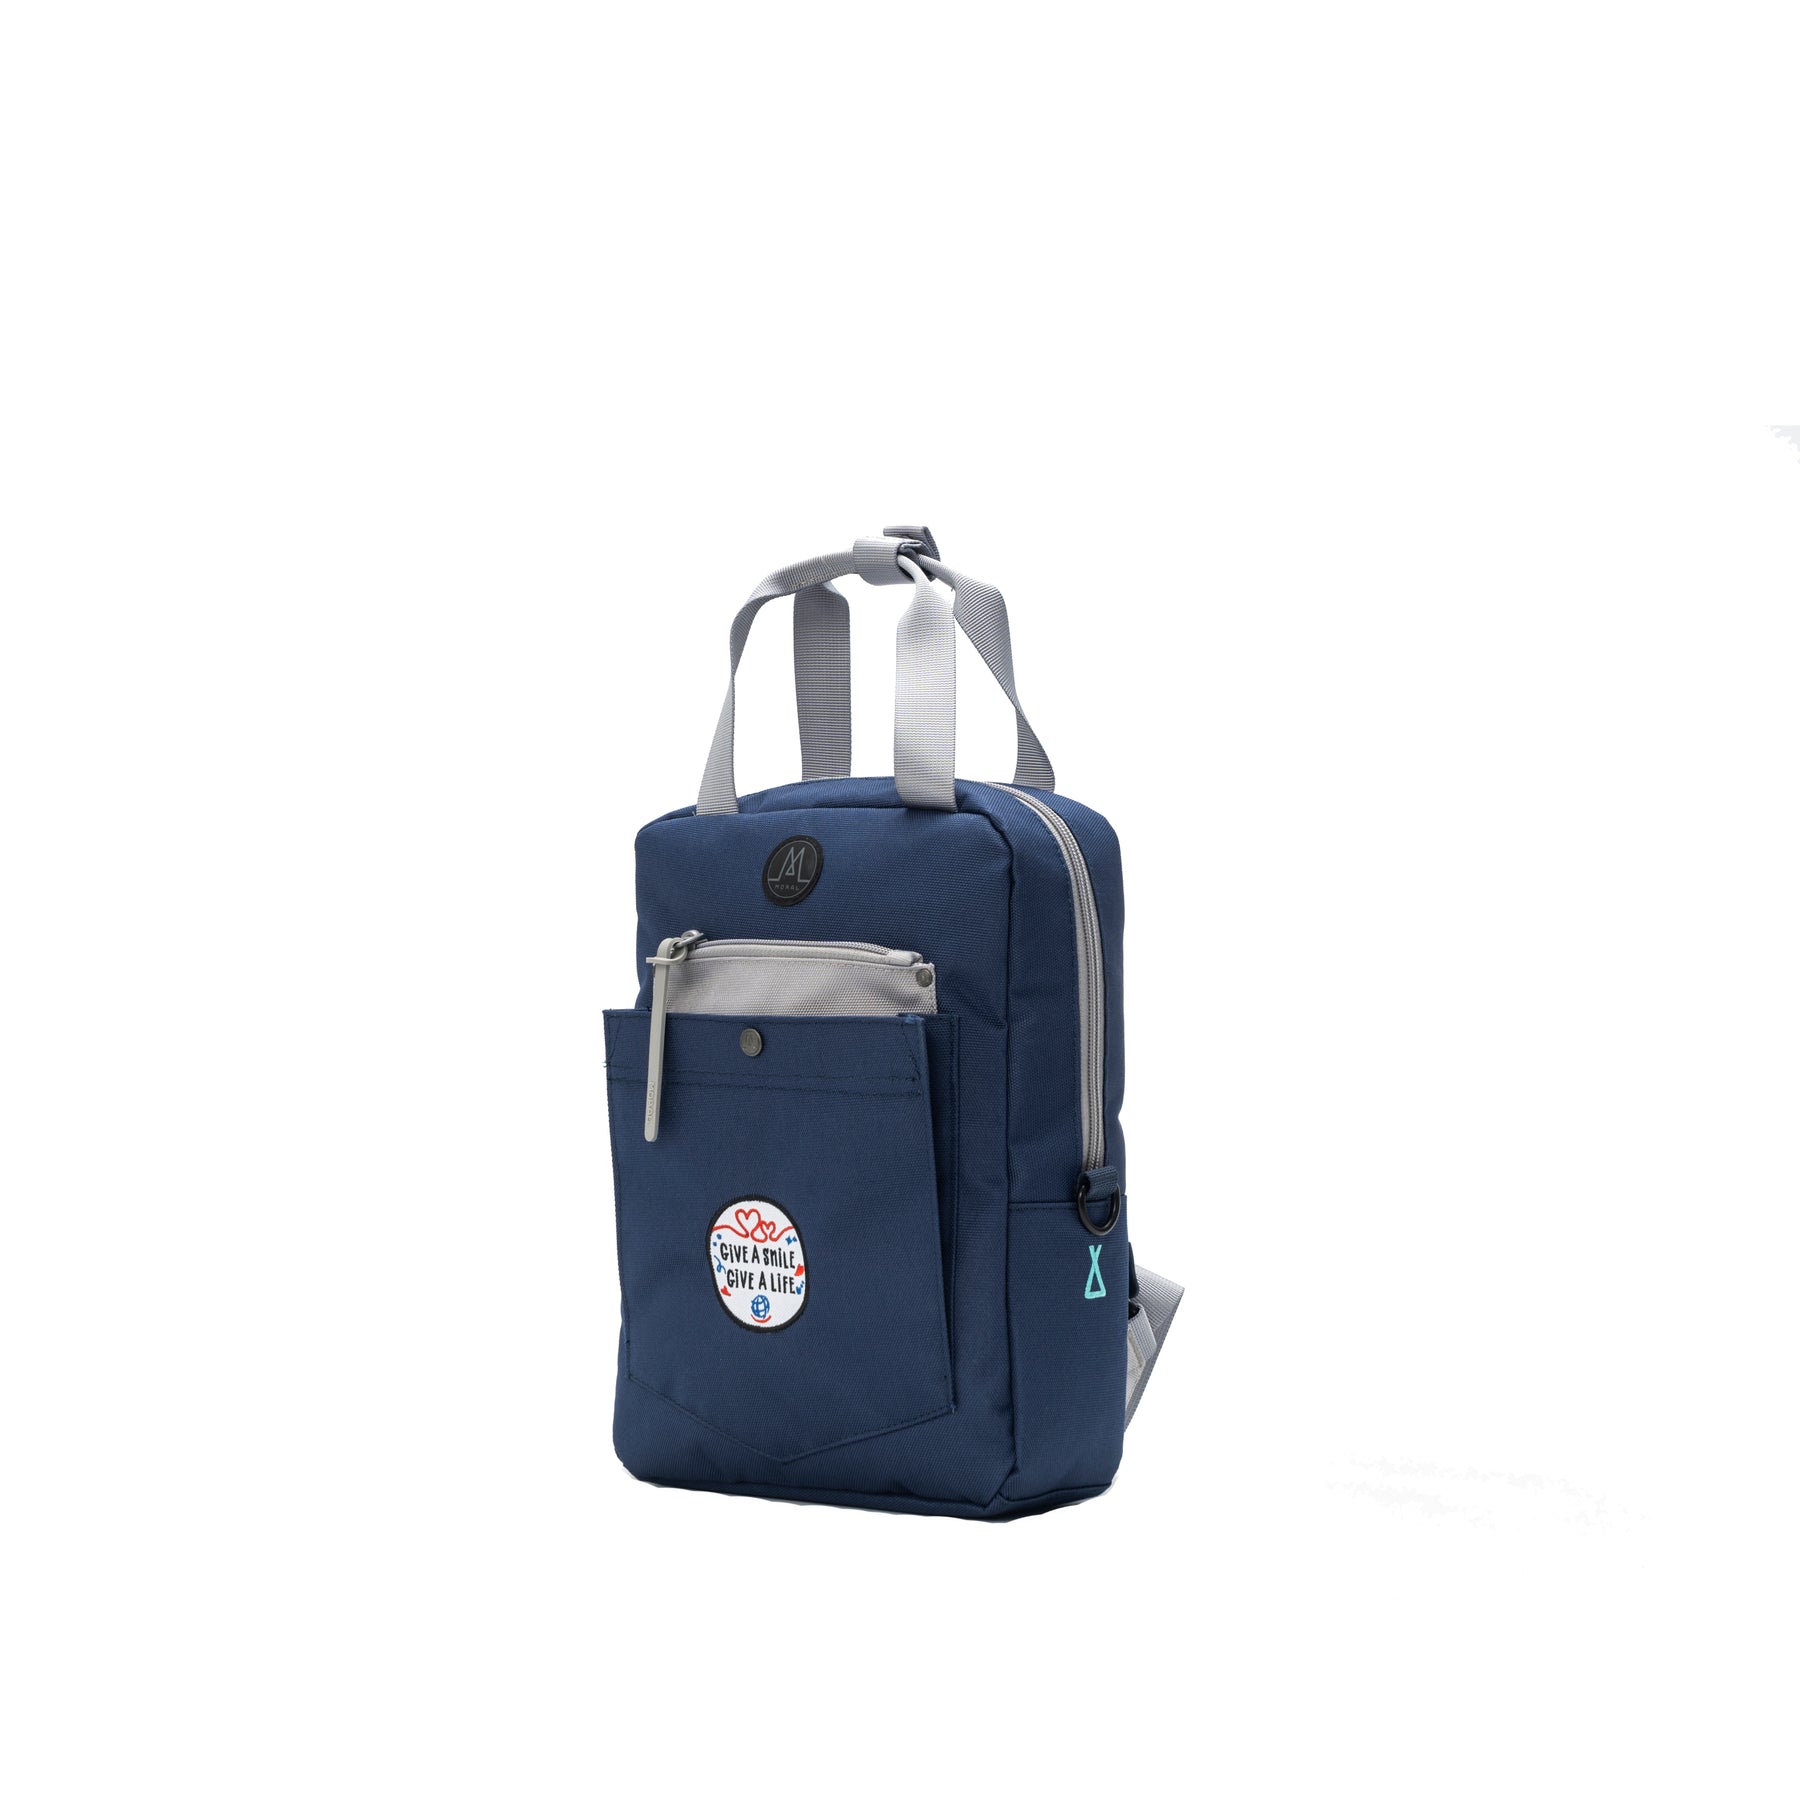 OS Budd Backpack - Mini